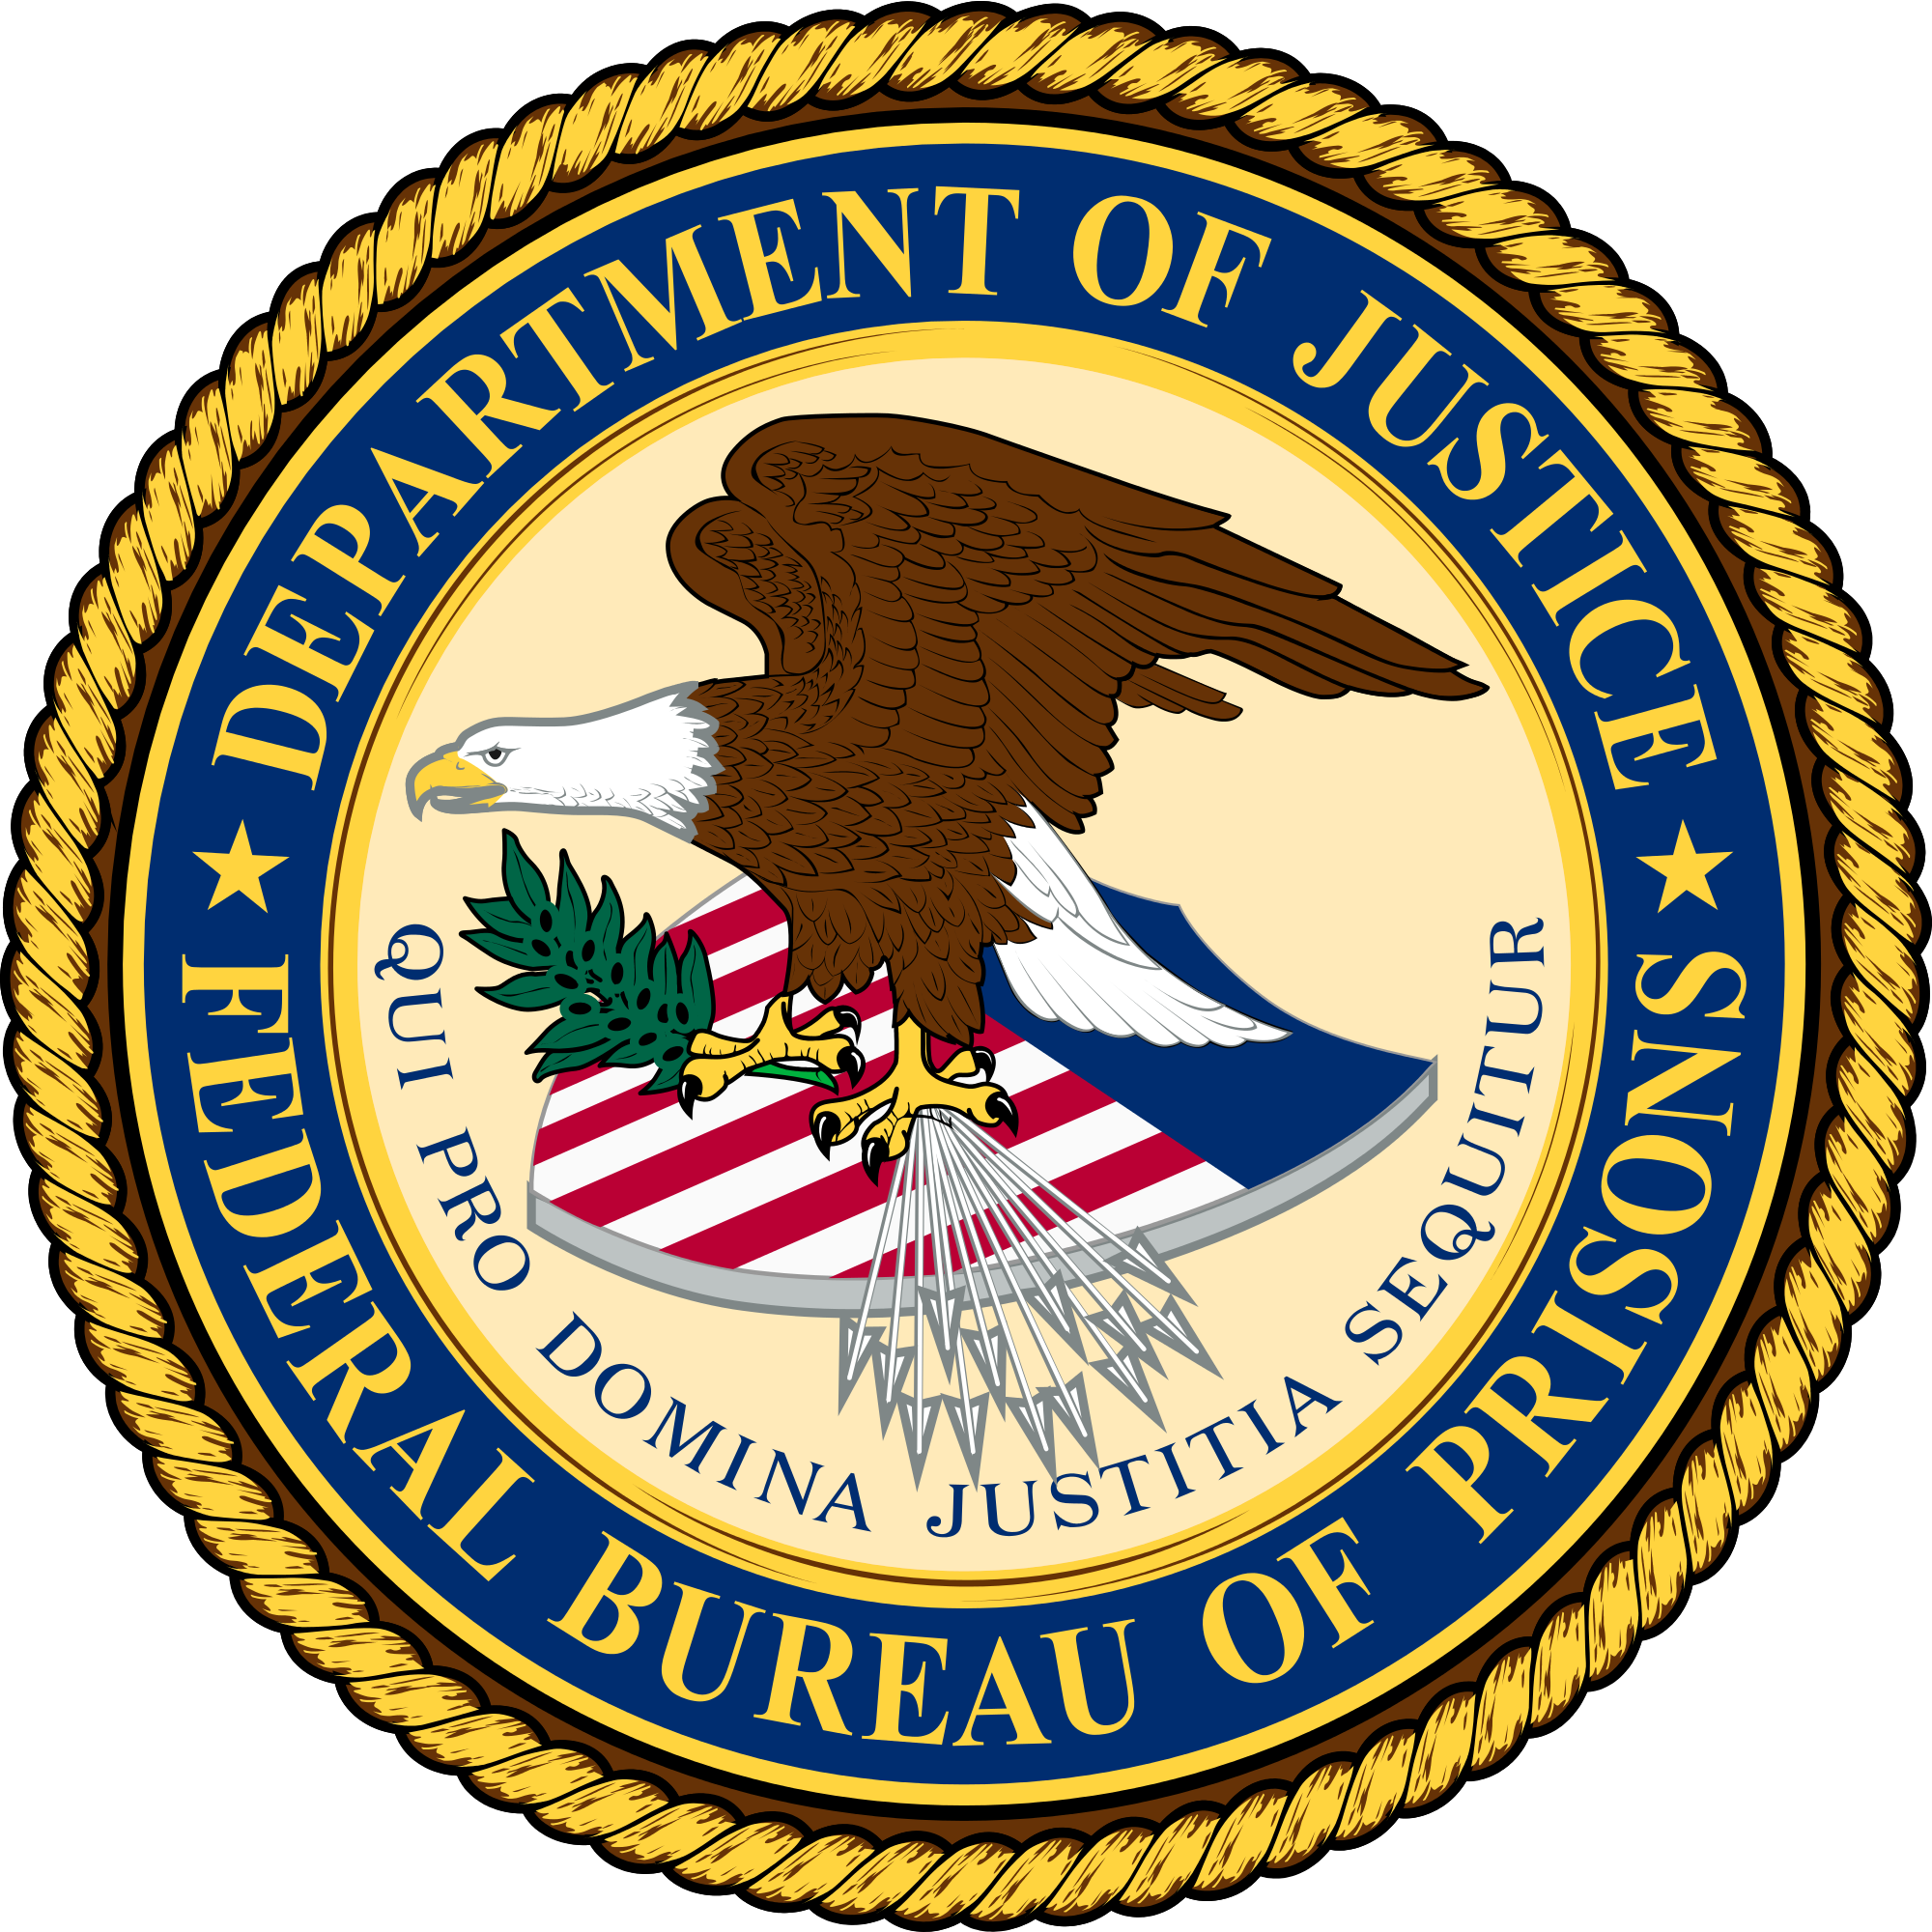 File:Federal Bureau of Prisons Seal.jpg